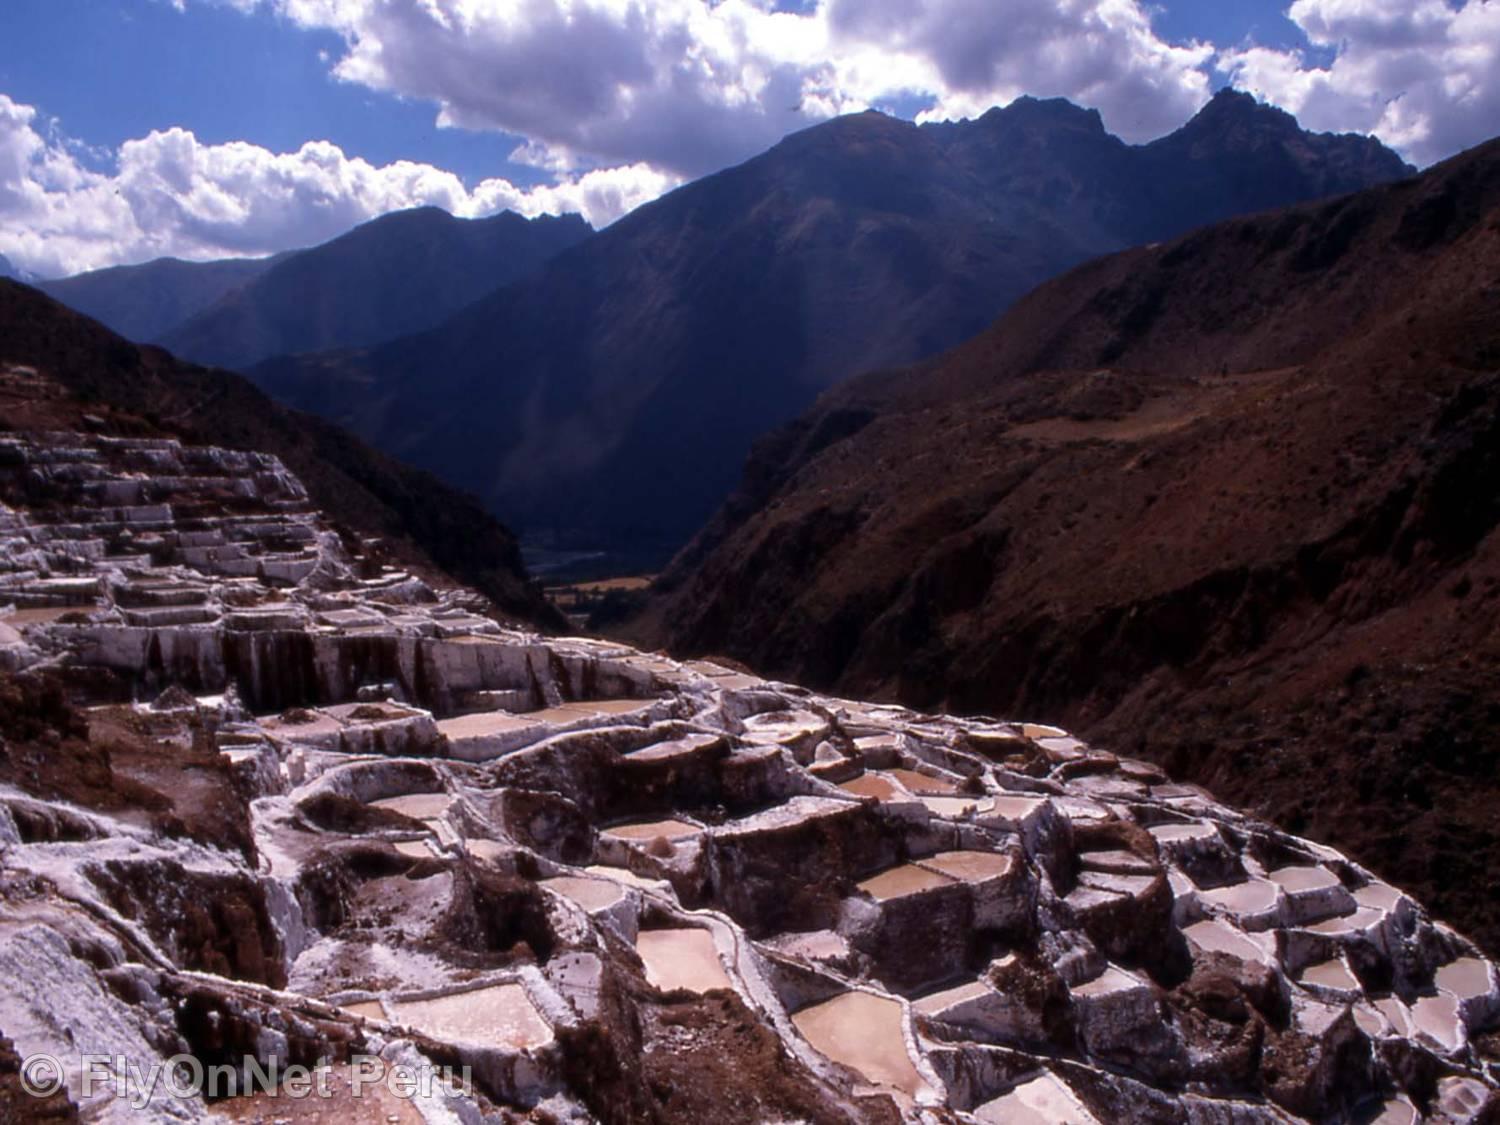 Álbum de fotos: Maras Salt Mines, Cuzco